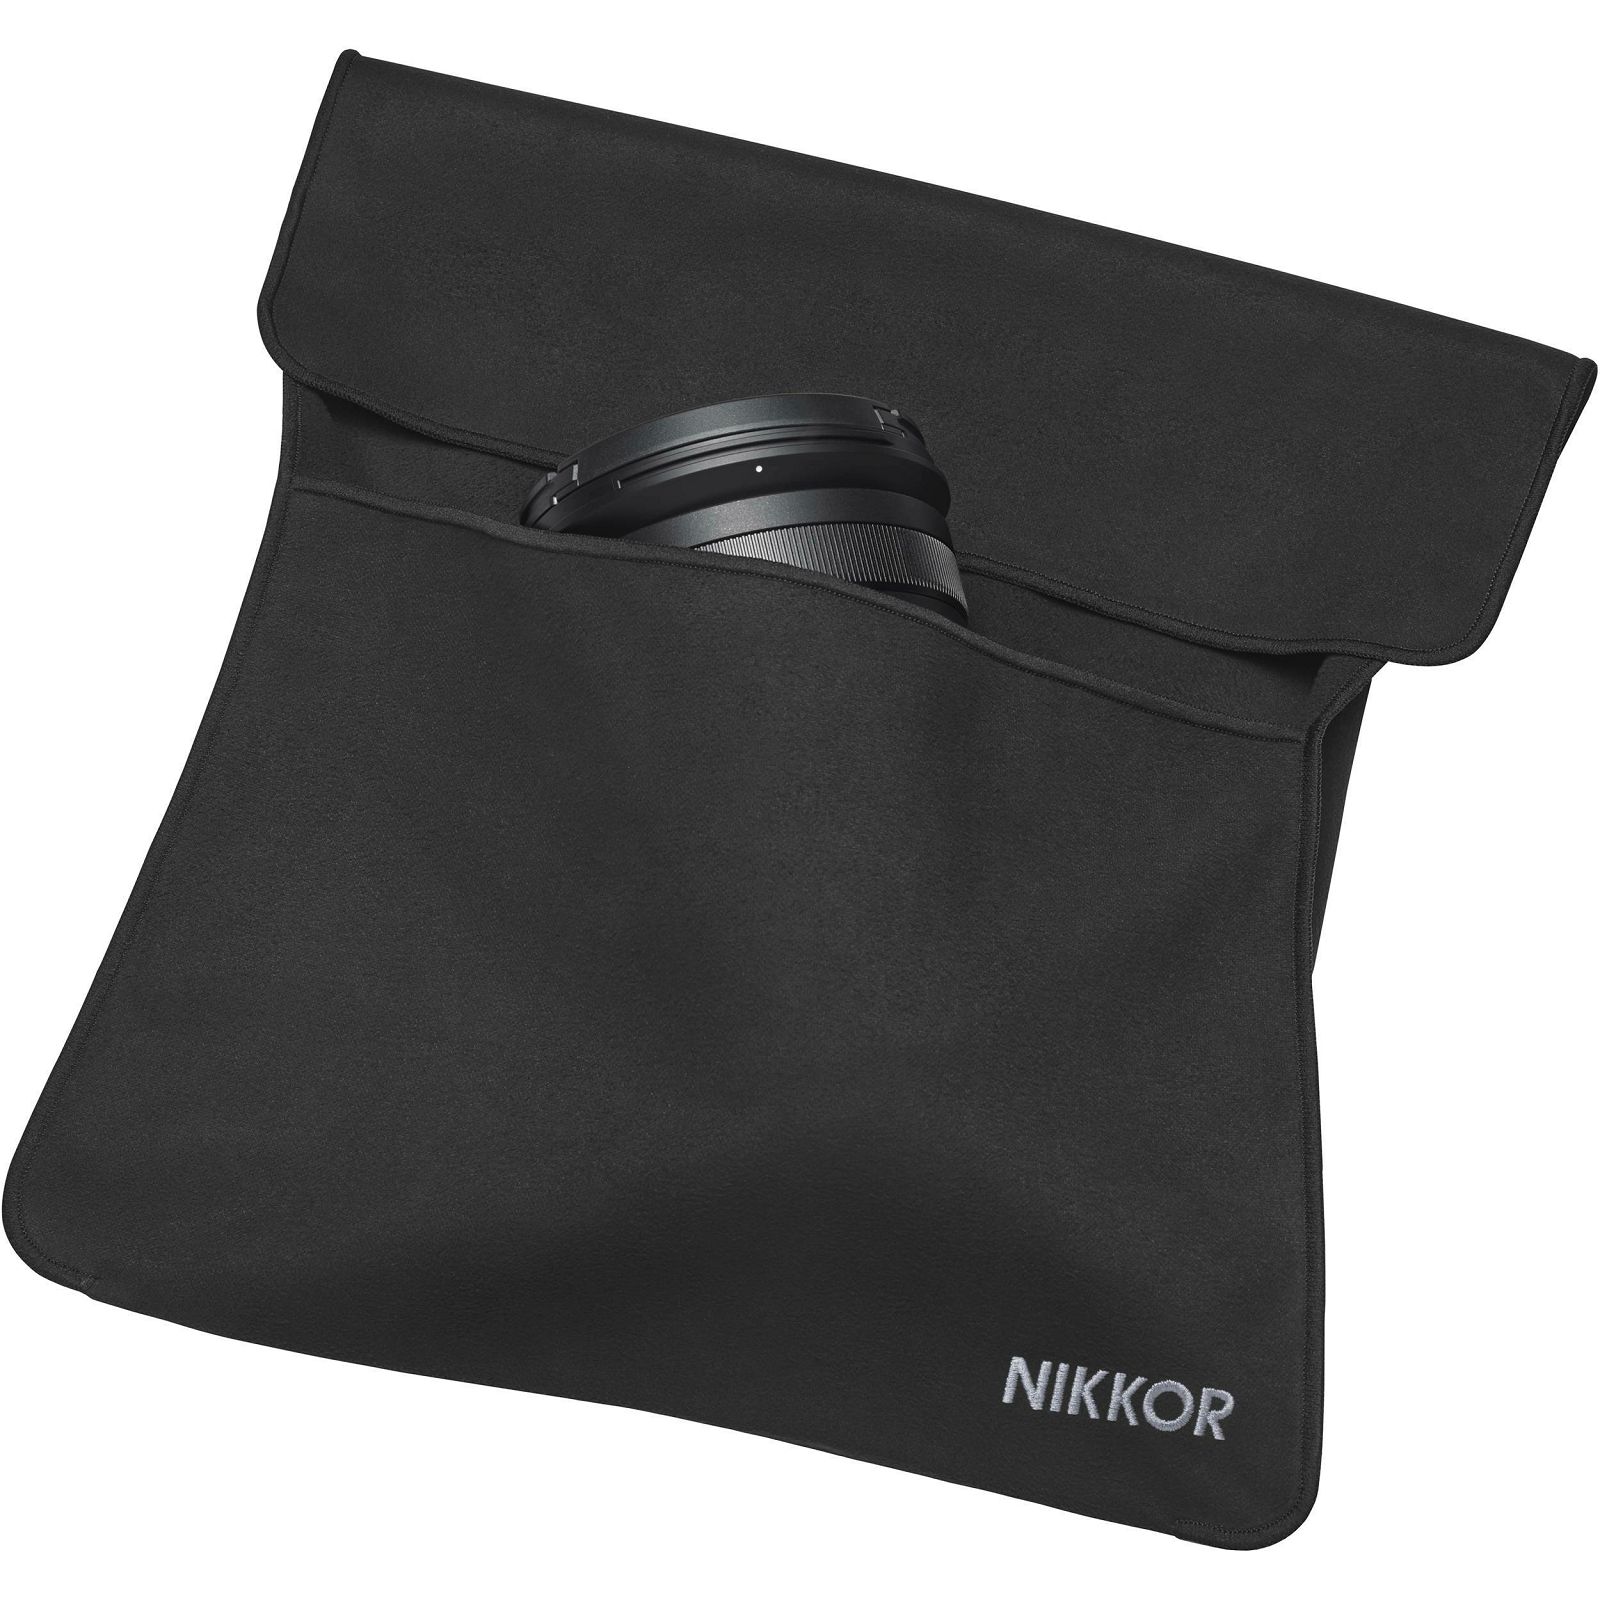 Nikon Z 24-70mm f/2.8 S standardni objektiv Nikkor 24-70 F2.8 2.8 zoom lens (JMA708DA)